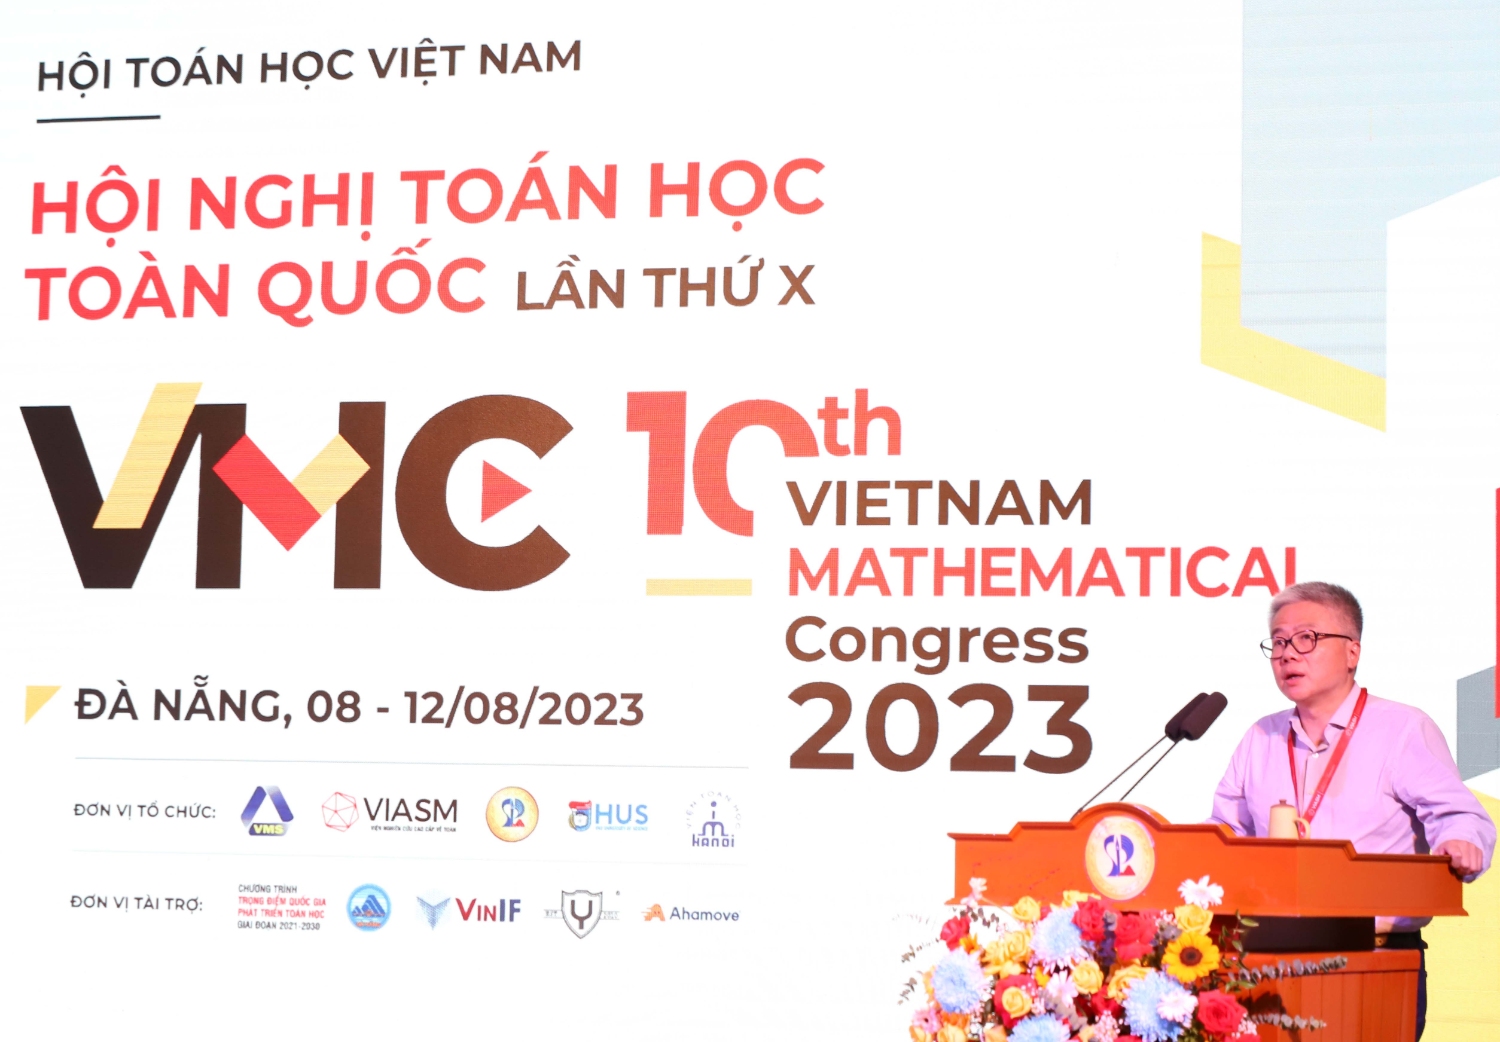 Khai mac HN Toan hoc Viet Nam 13 GS Ngo Bao Chau